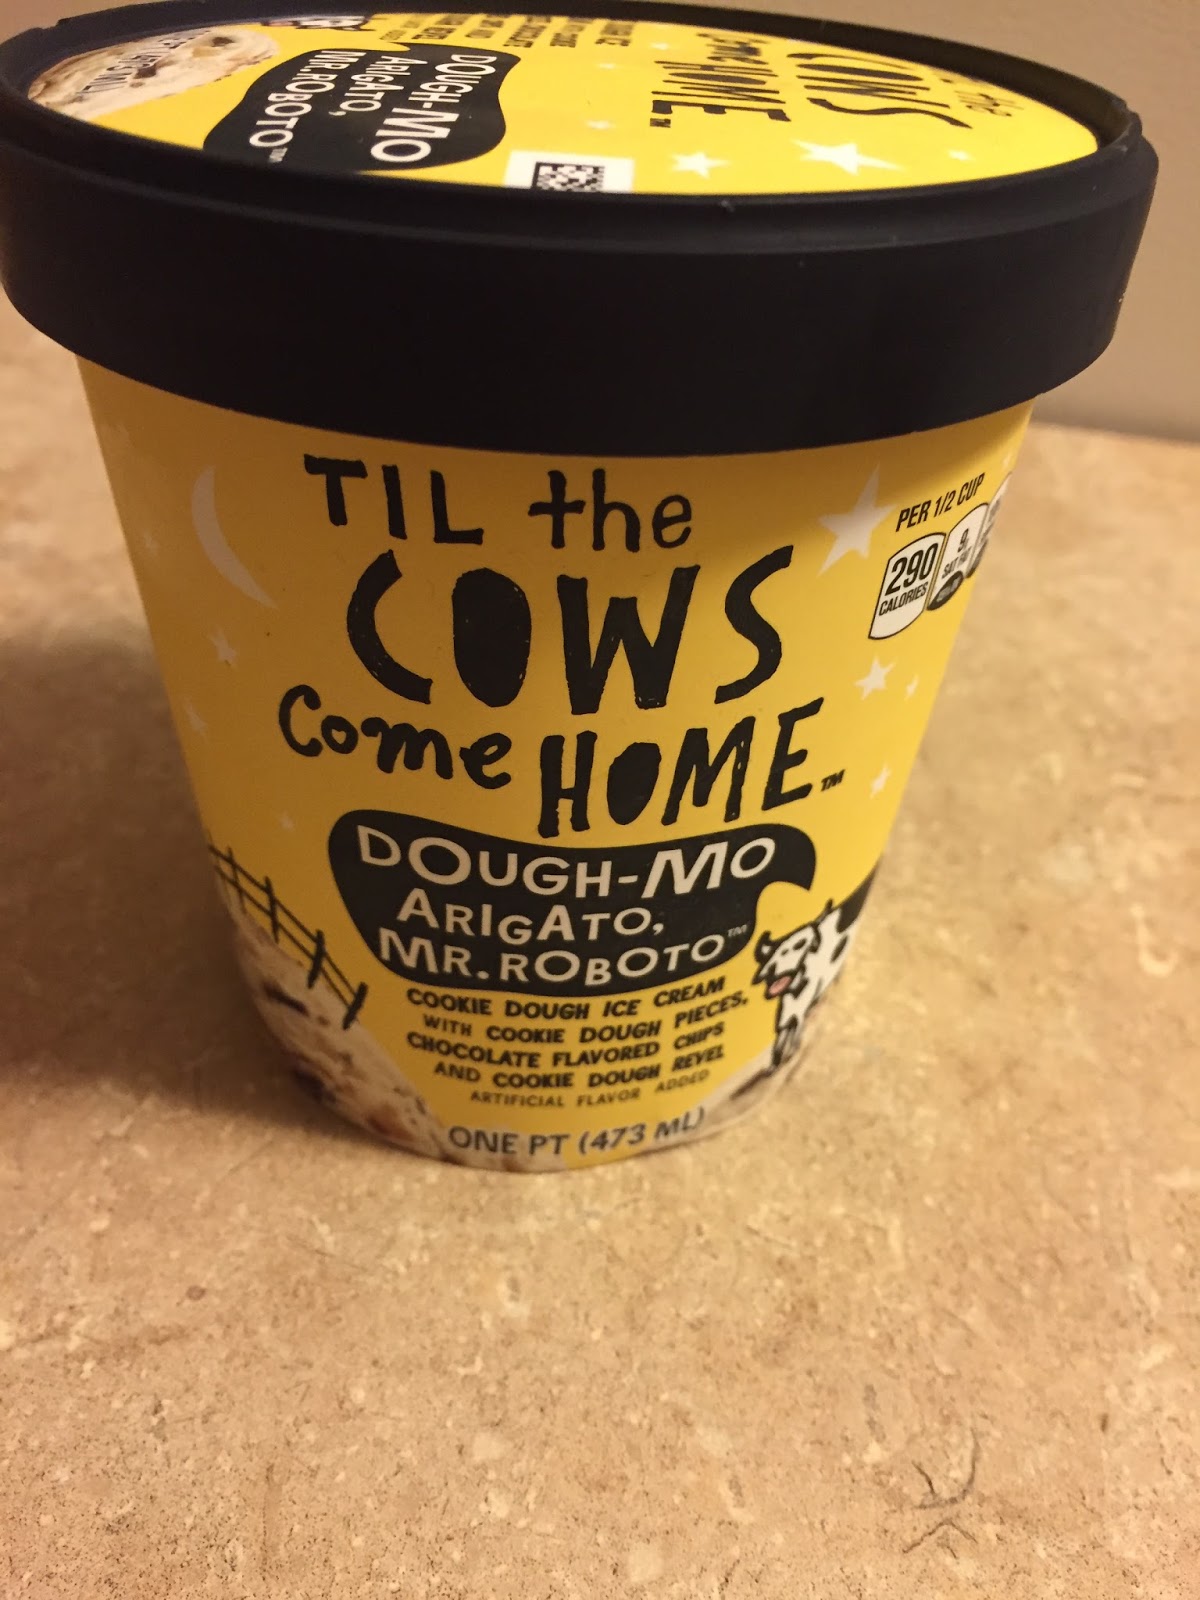 Til the Cows Come Home: Dough-Mo Arigato, Mr. Roboto